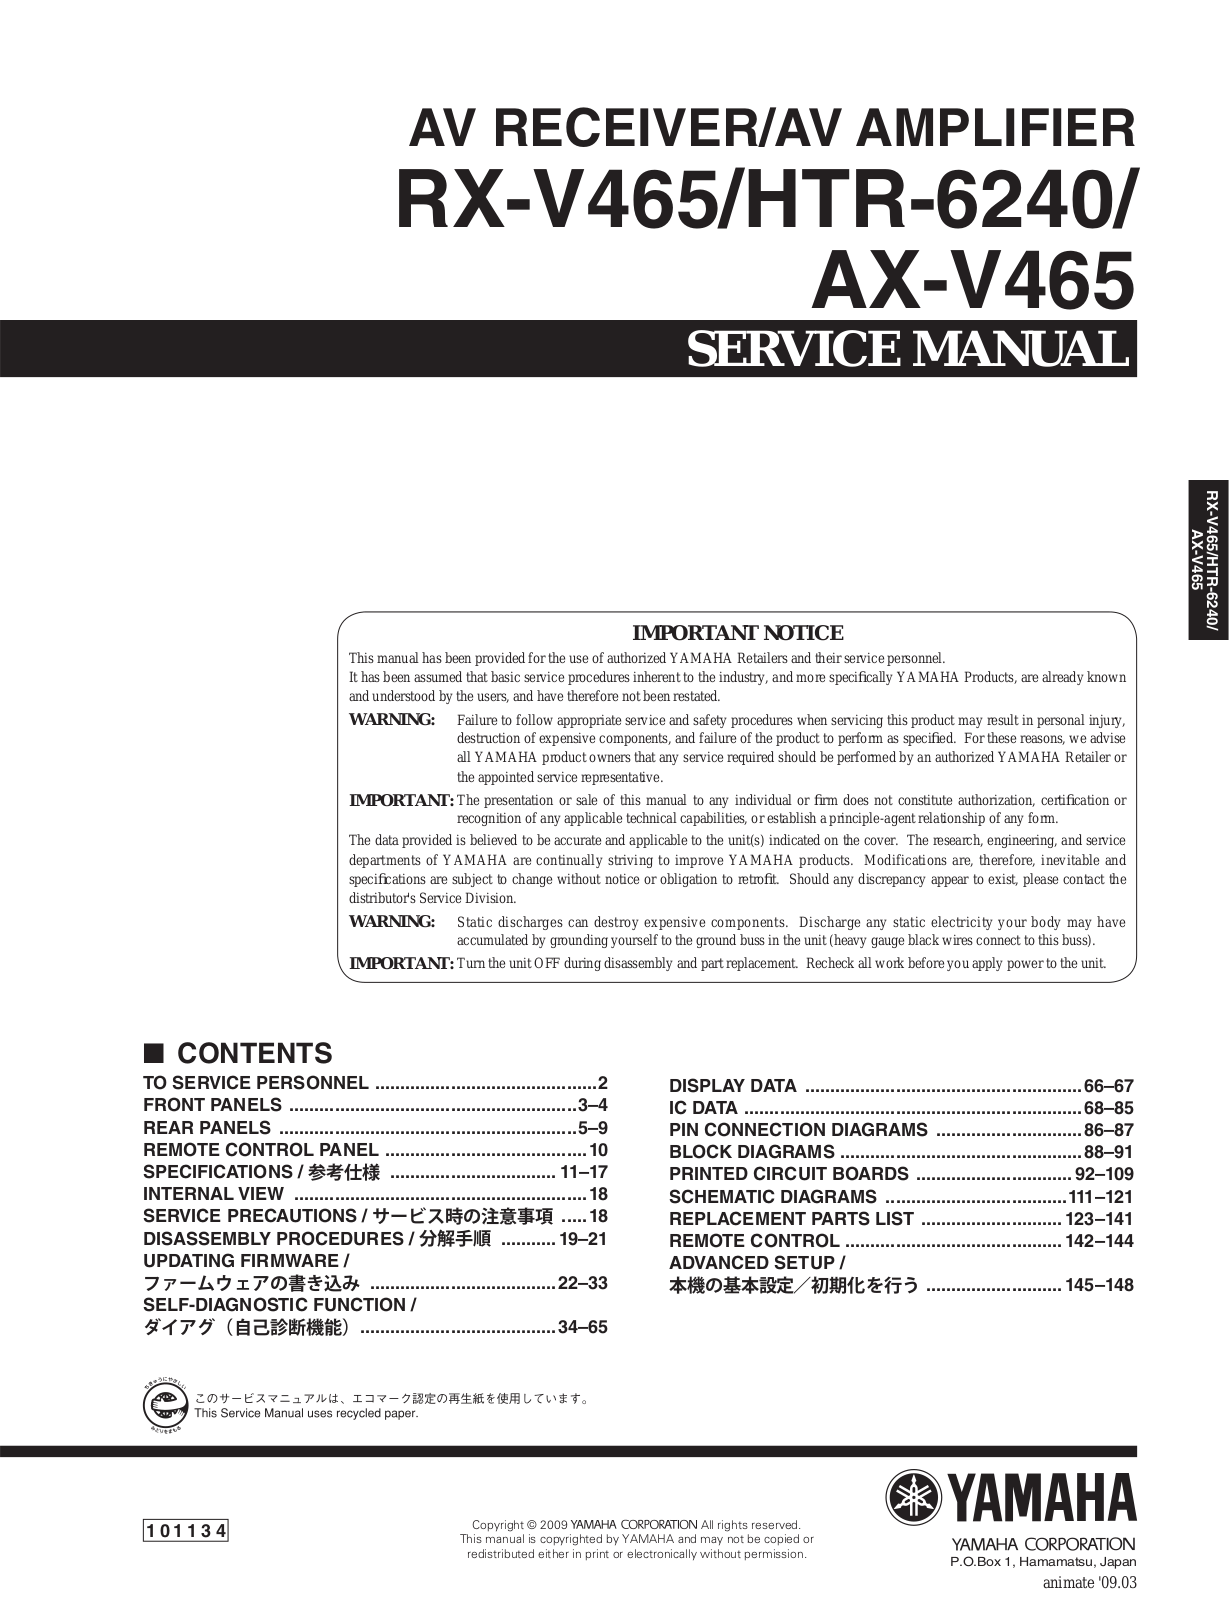 Yamaha RX-V465, AX-V465 Service Manual